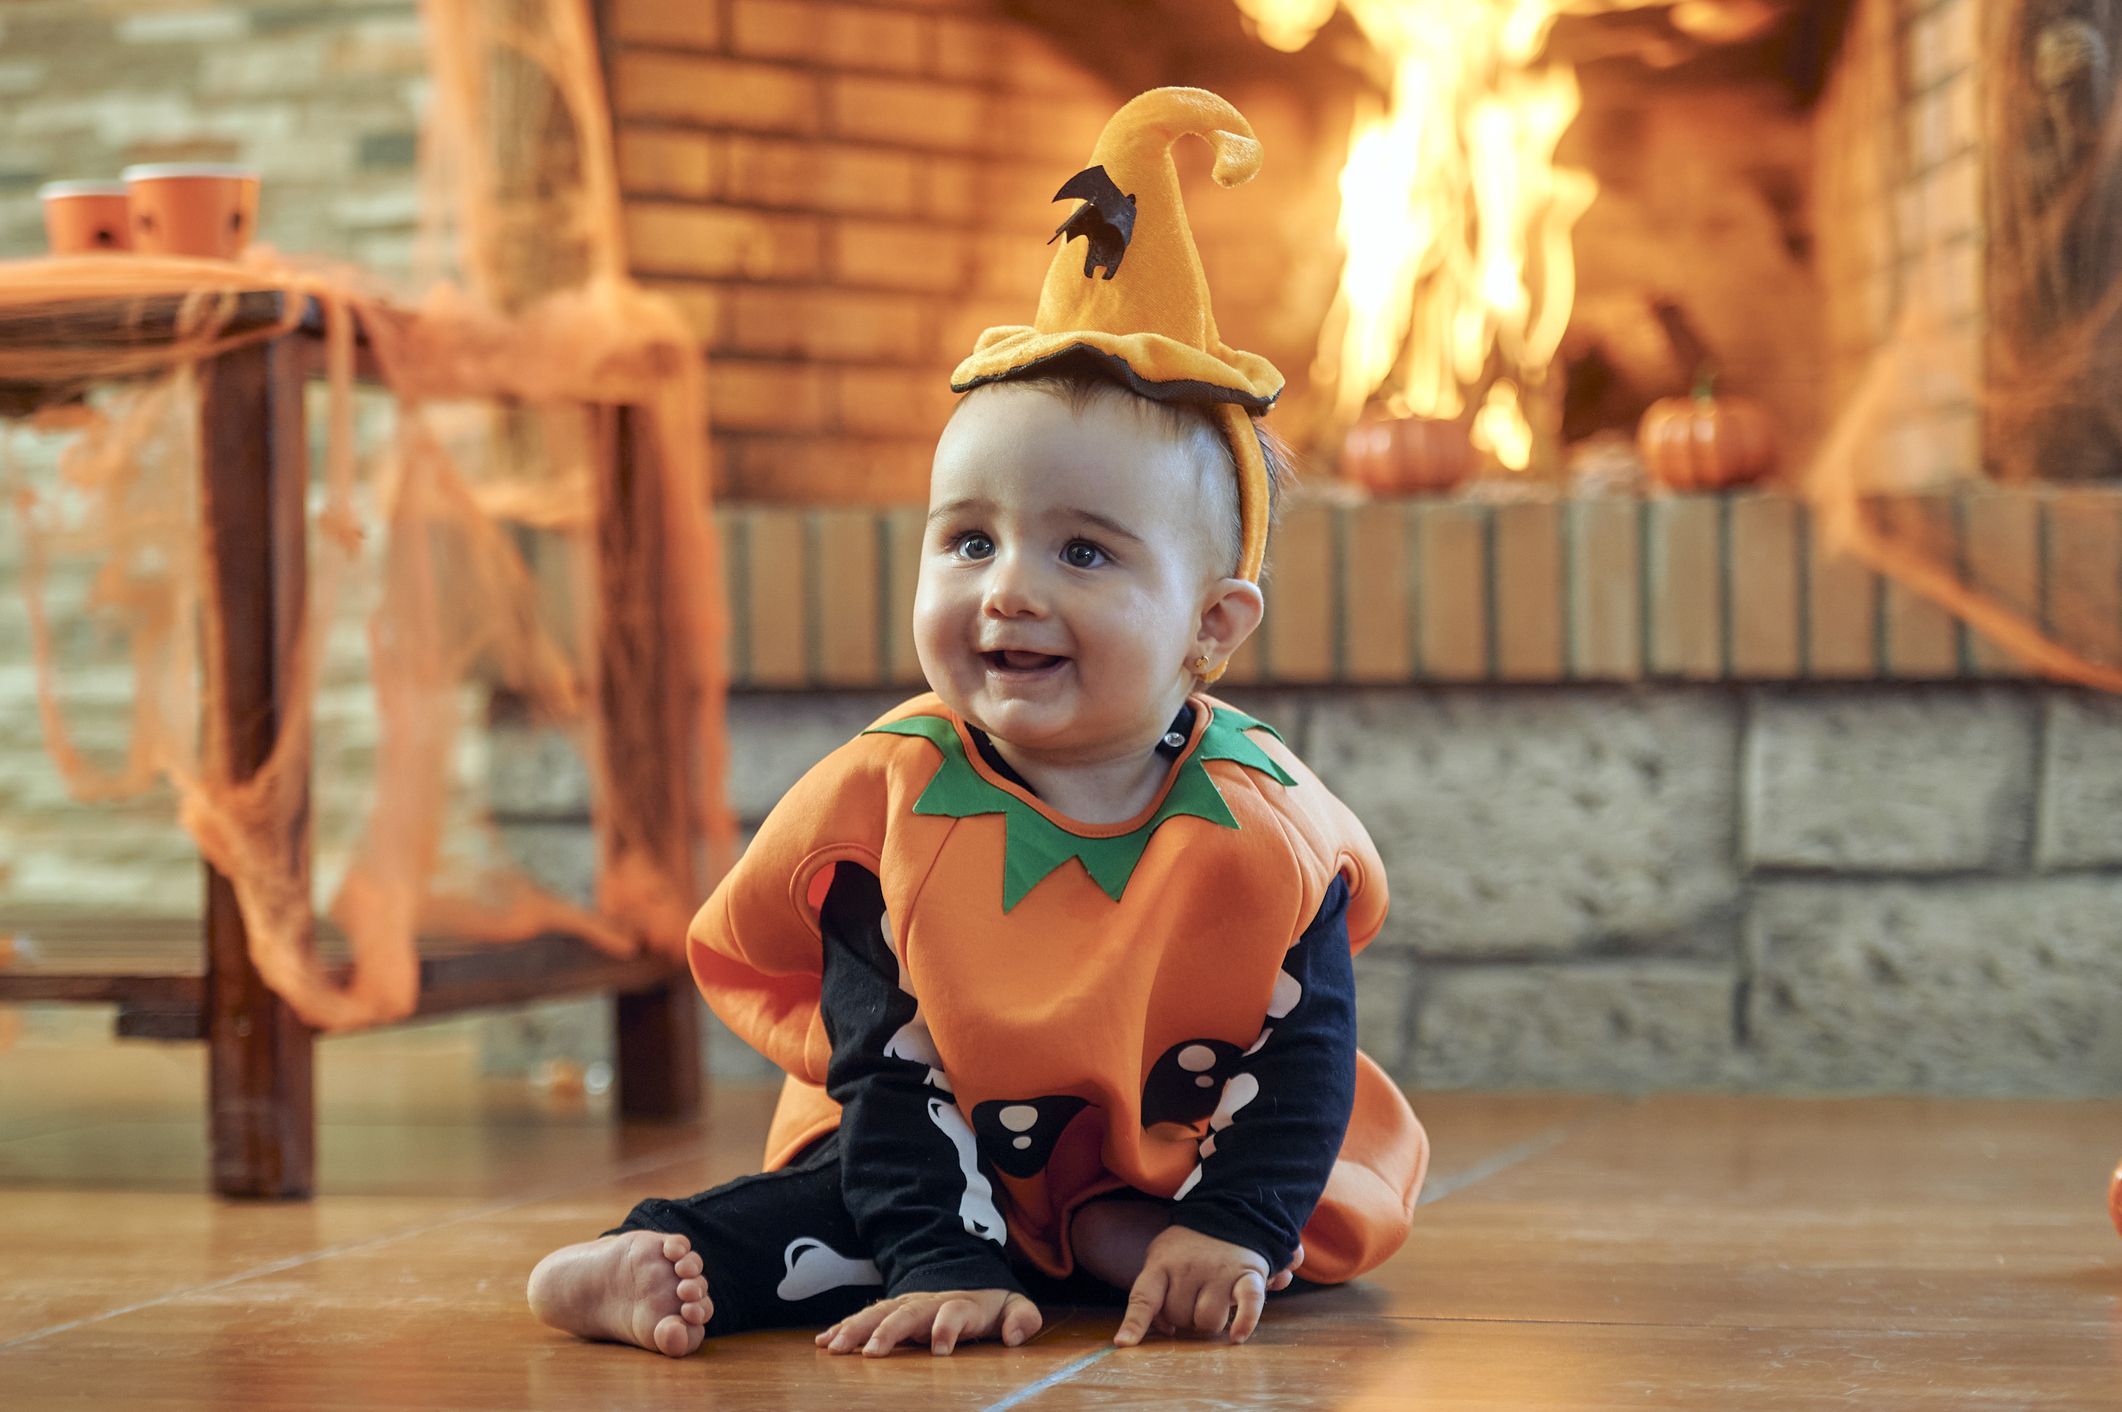 Grupo partido Republicano Alienación Disfraces de bebés e ideas para celebrar Halloween